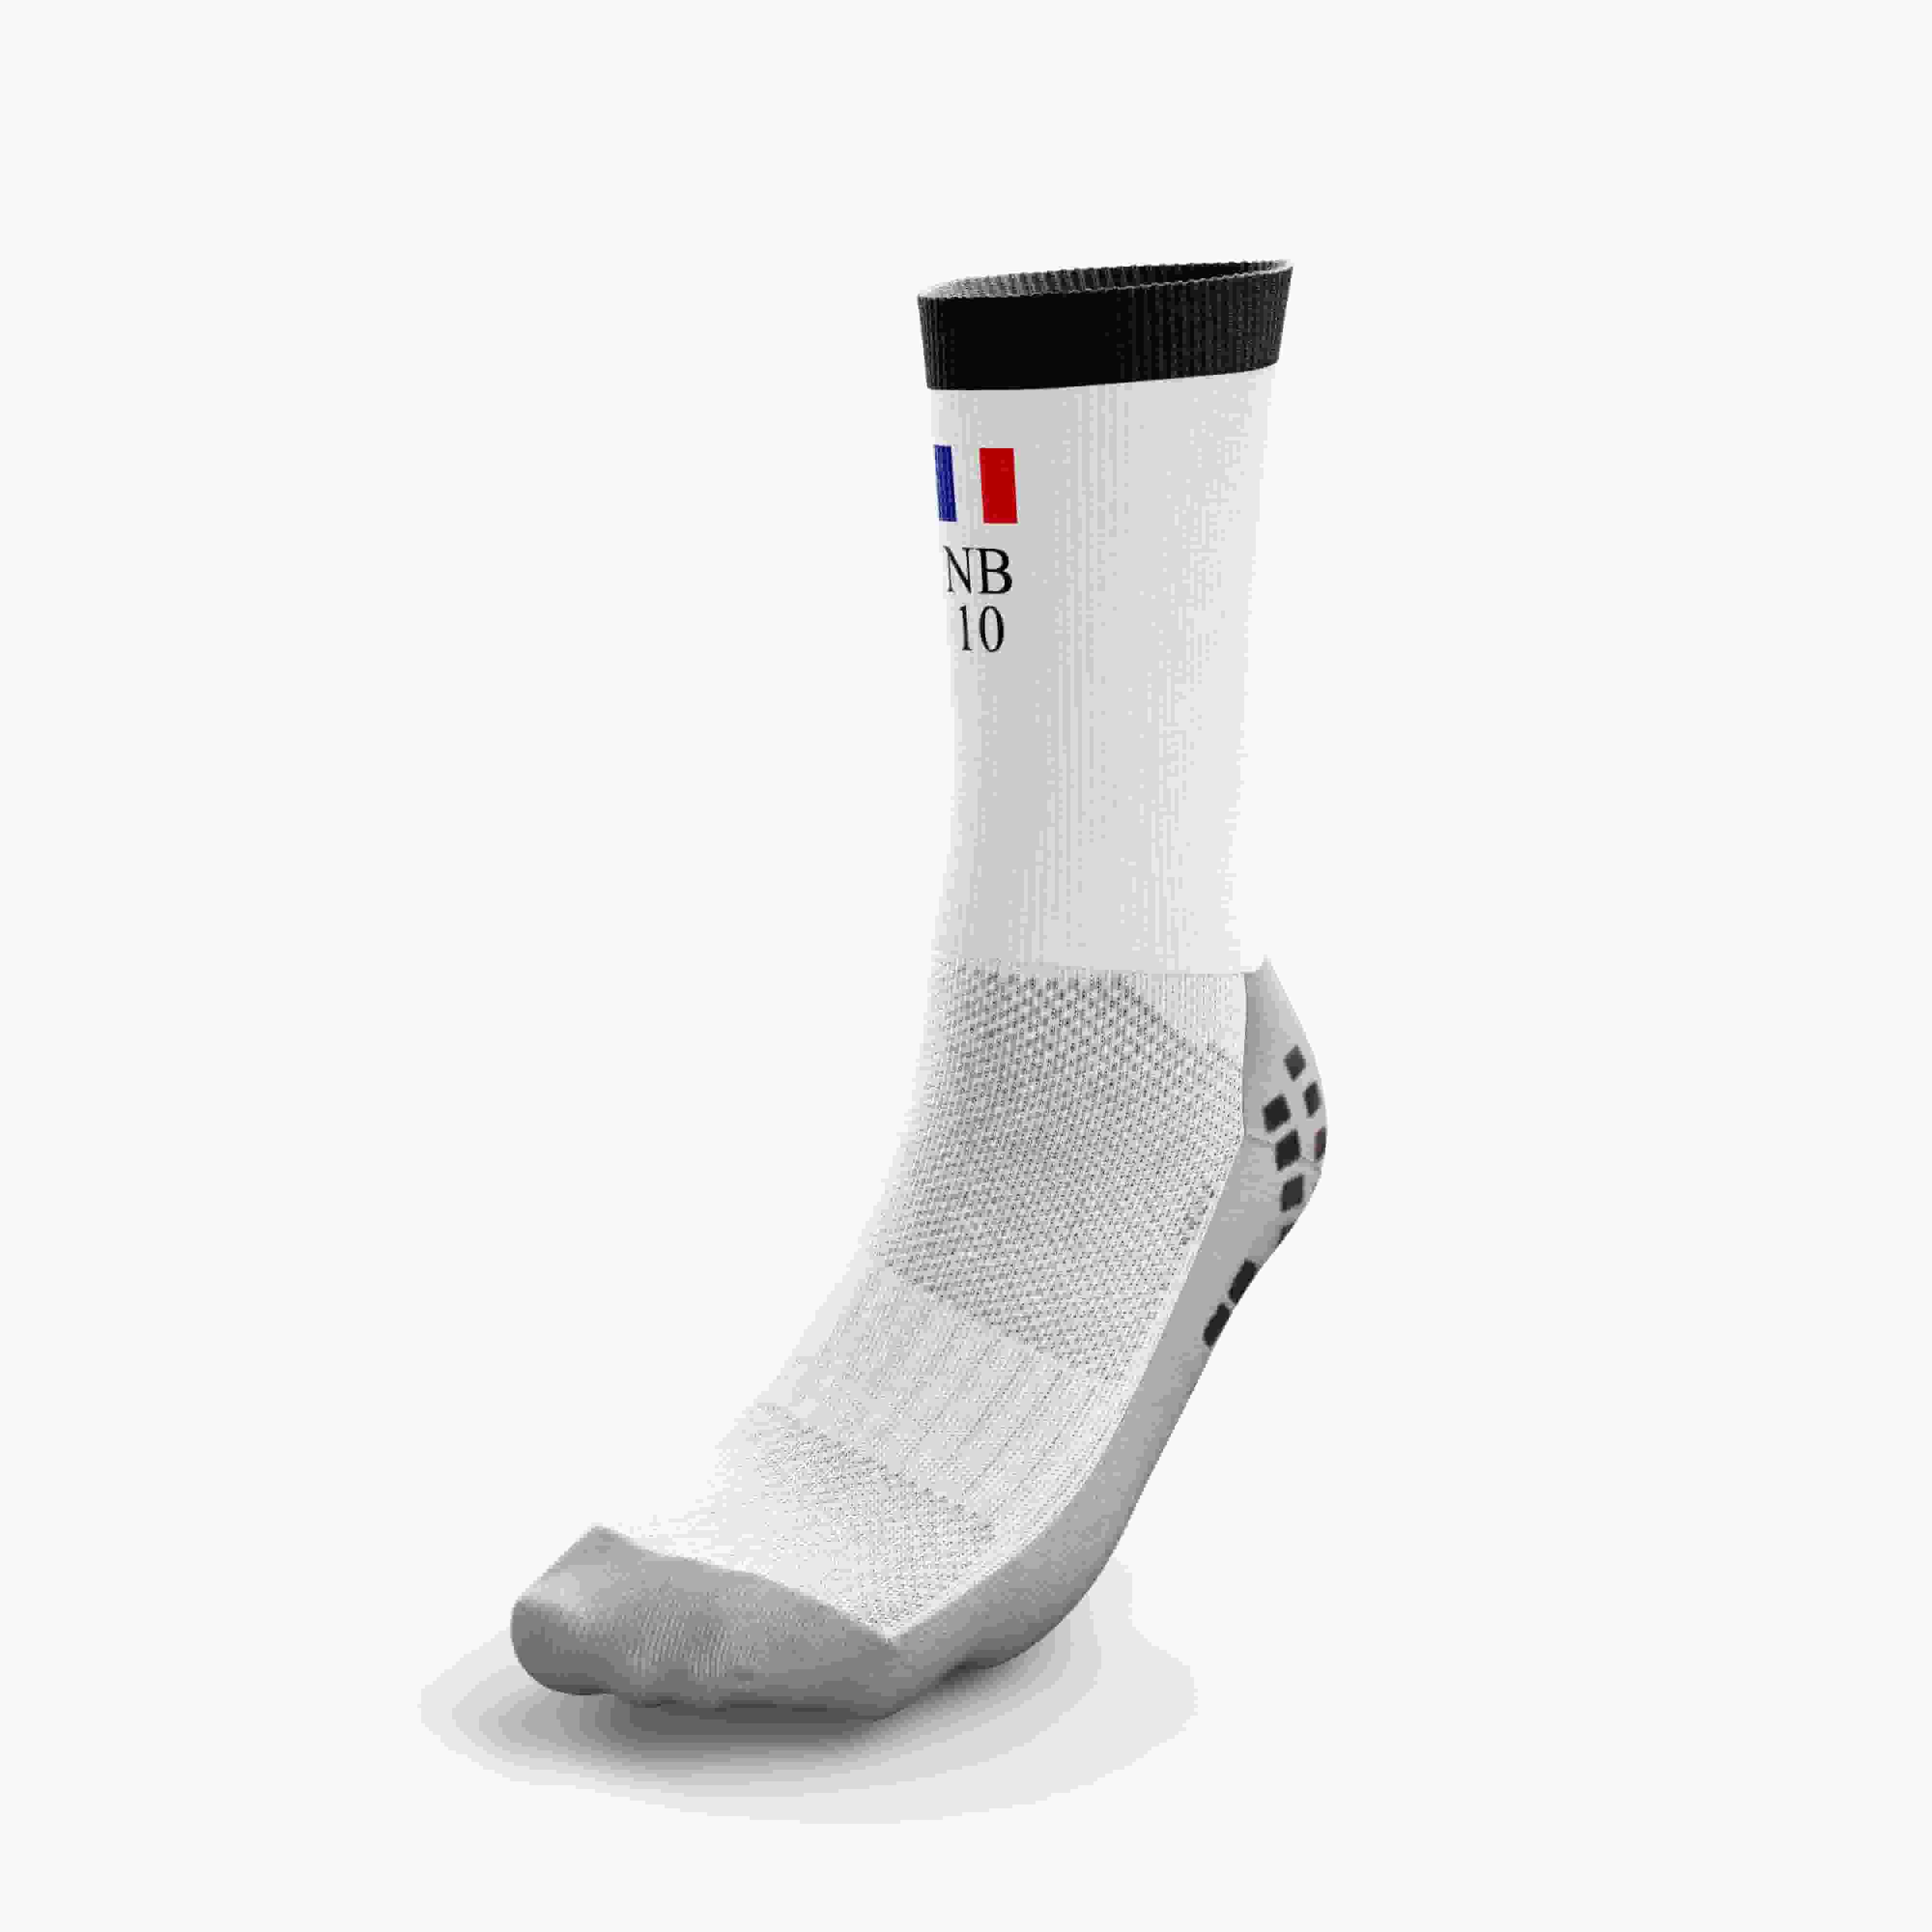 Grips socks customizable